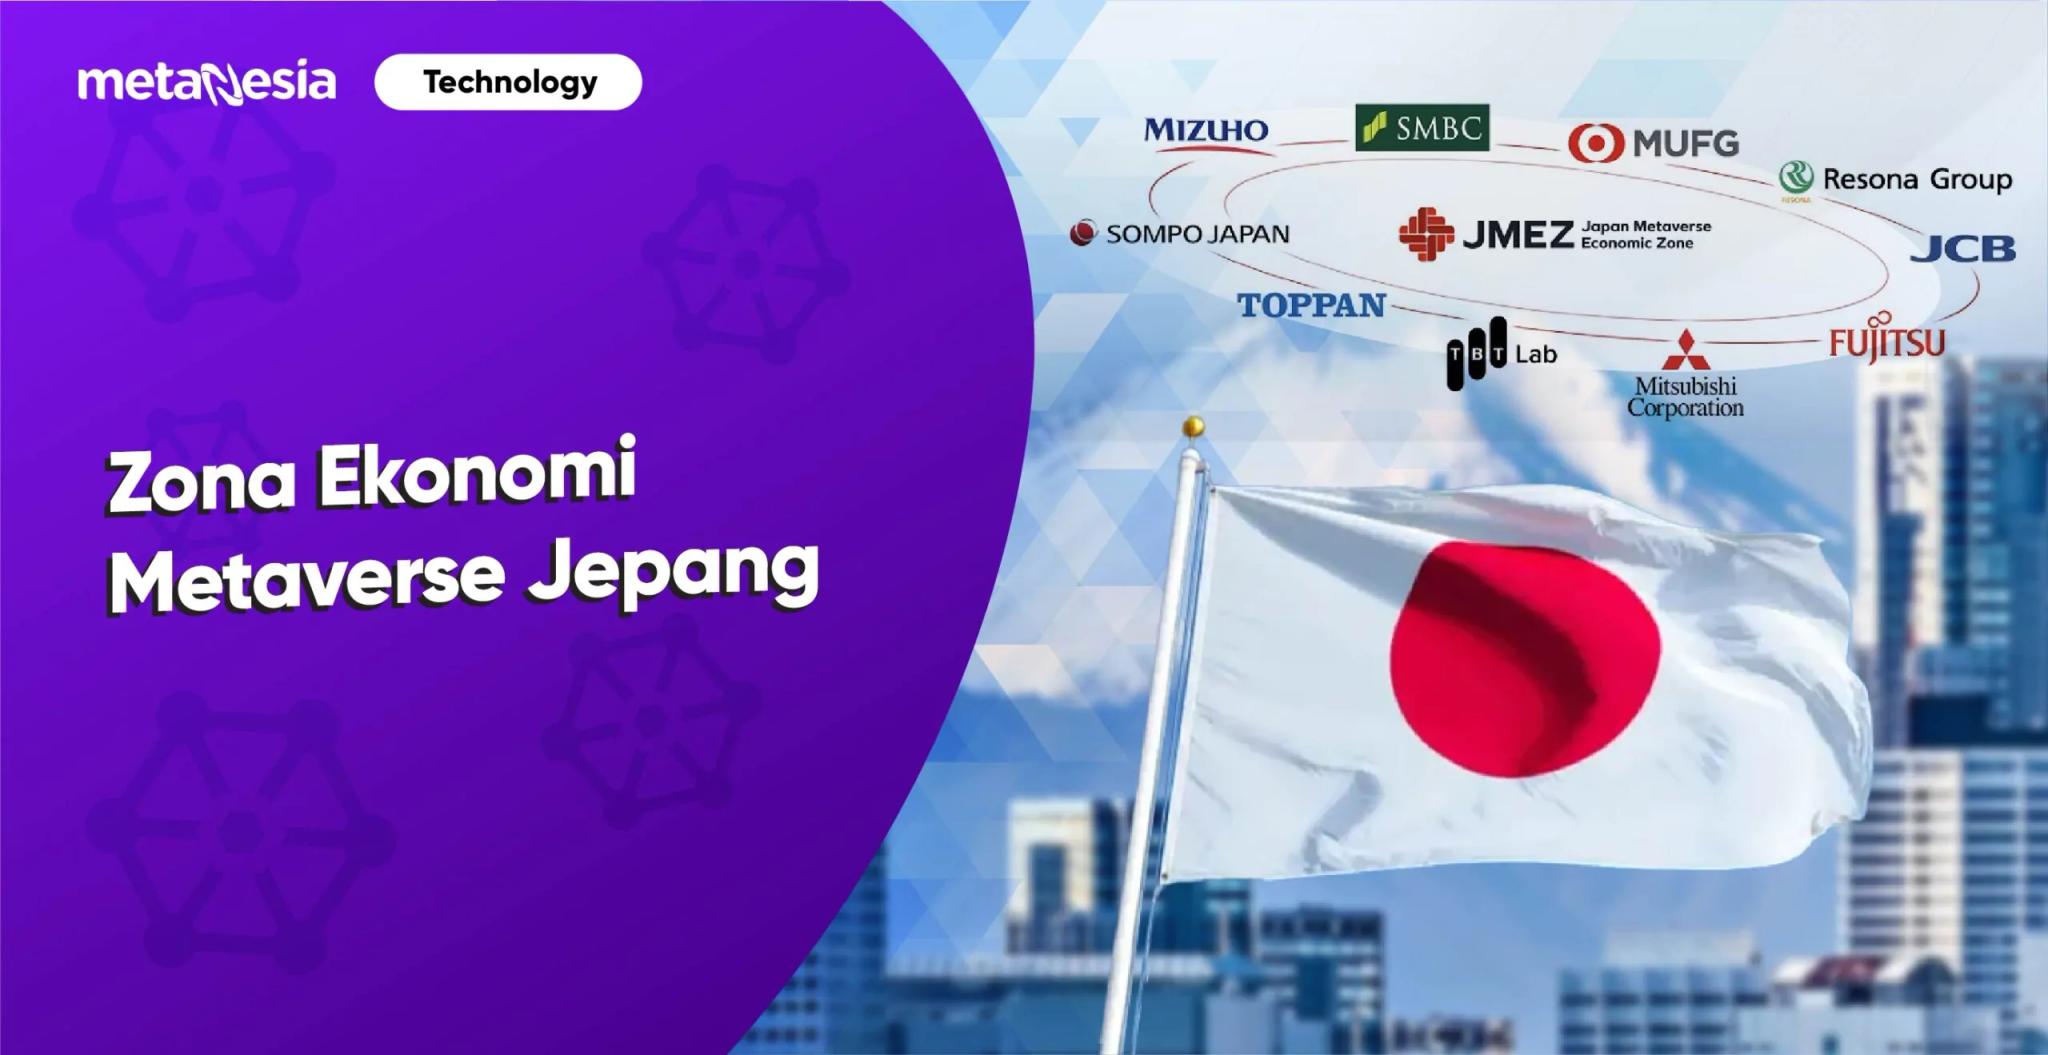 Perusahaan Teknologi dan Keuangan Raksasa, Siap Bergabung dan Kembangkan Zona Ekonomi Metaverse Jepang 